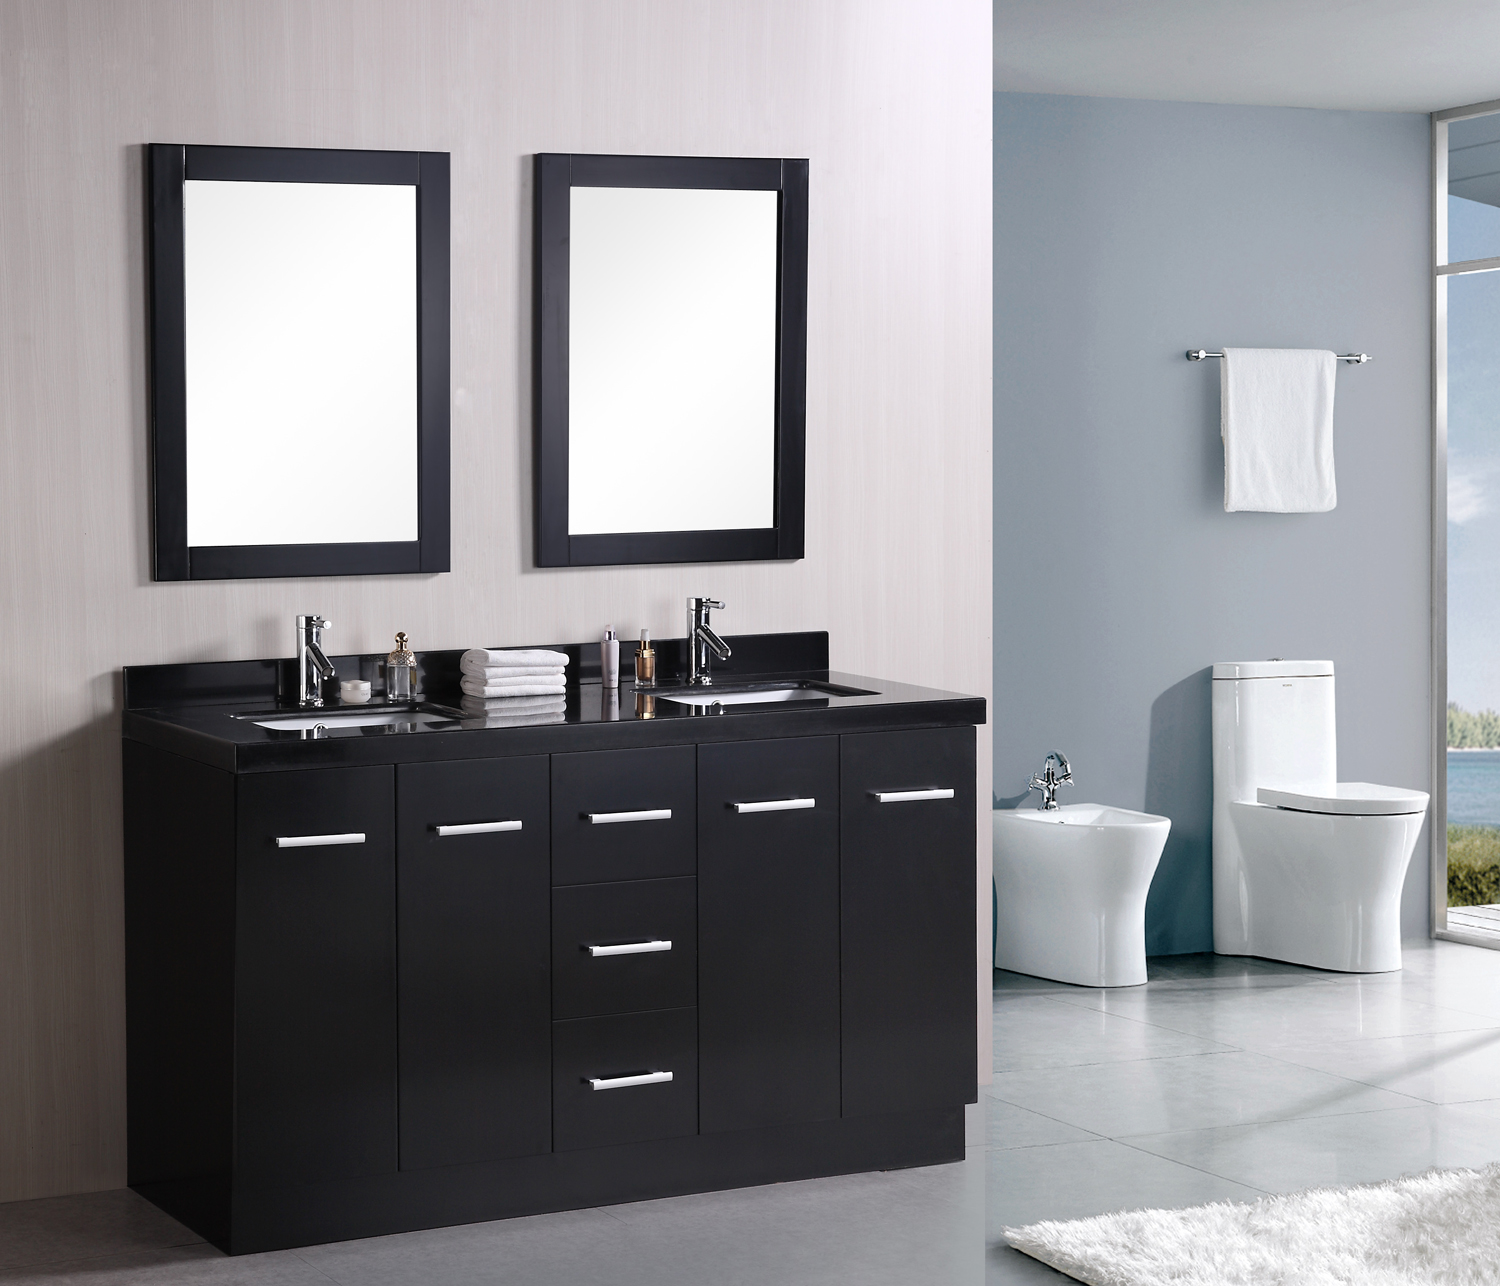 15 Must See Double Sink Bathroom Vanities in 2014 - Qnud